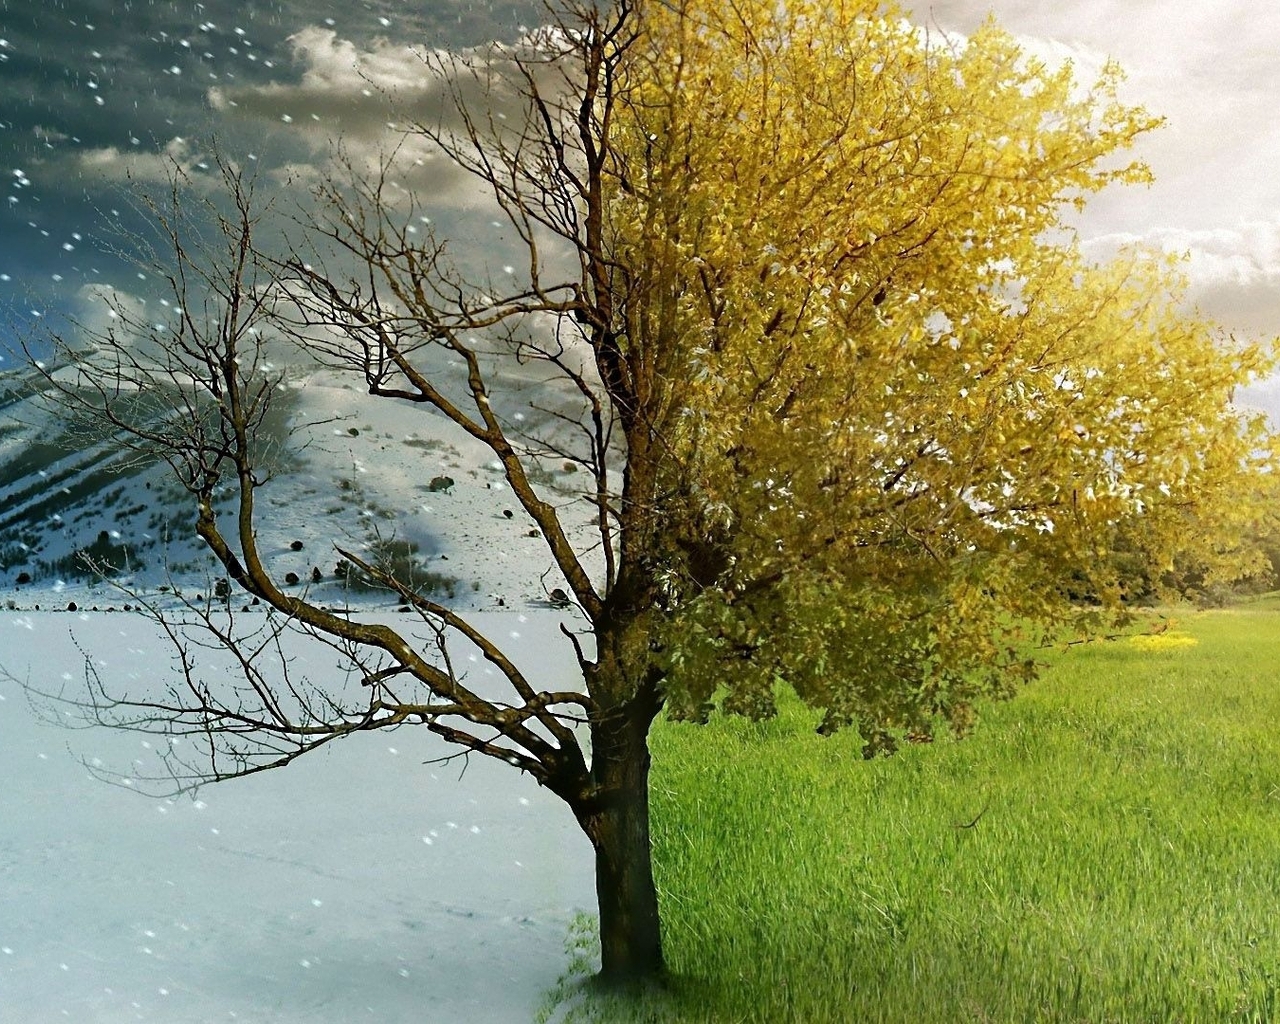 Картинка: Зима, лето, дерево, горы, снег, небо, облака, листья, ветки, трава, поле